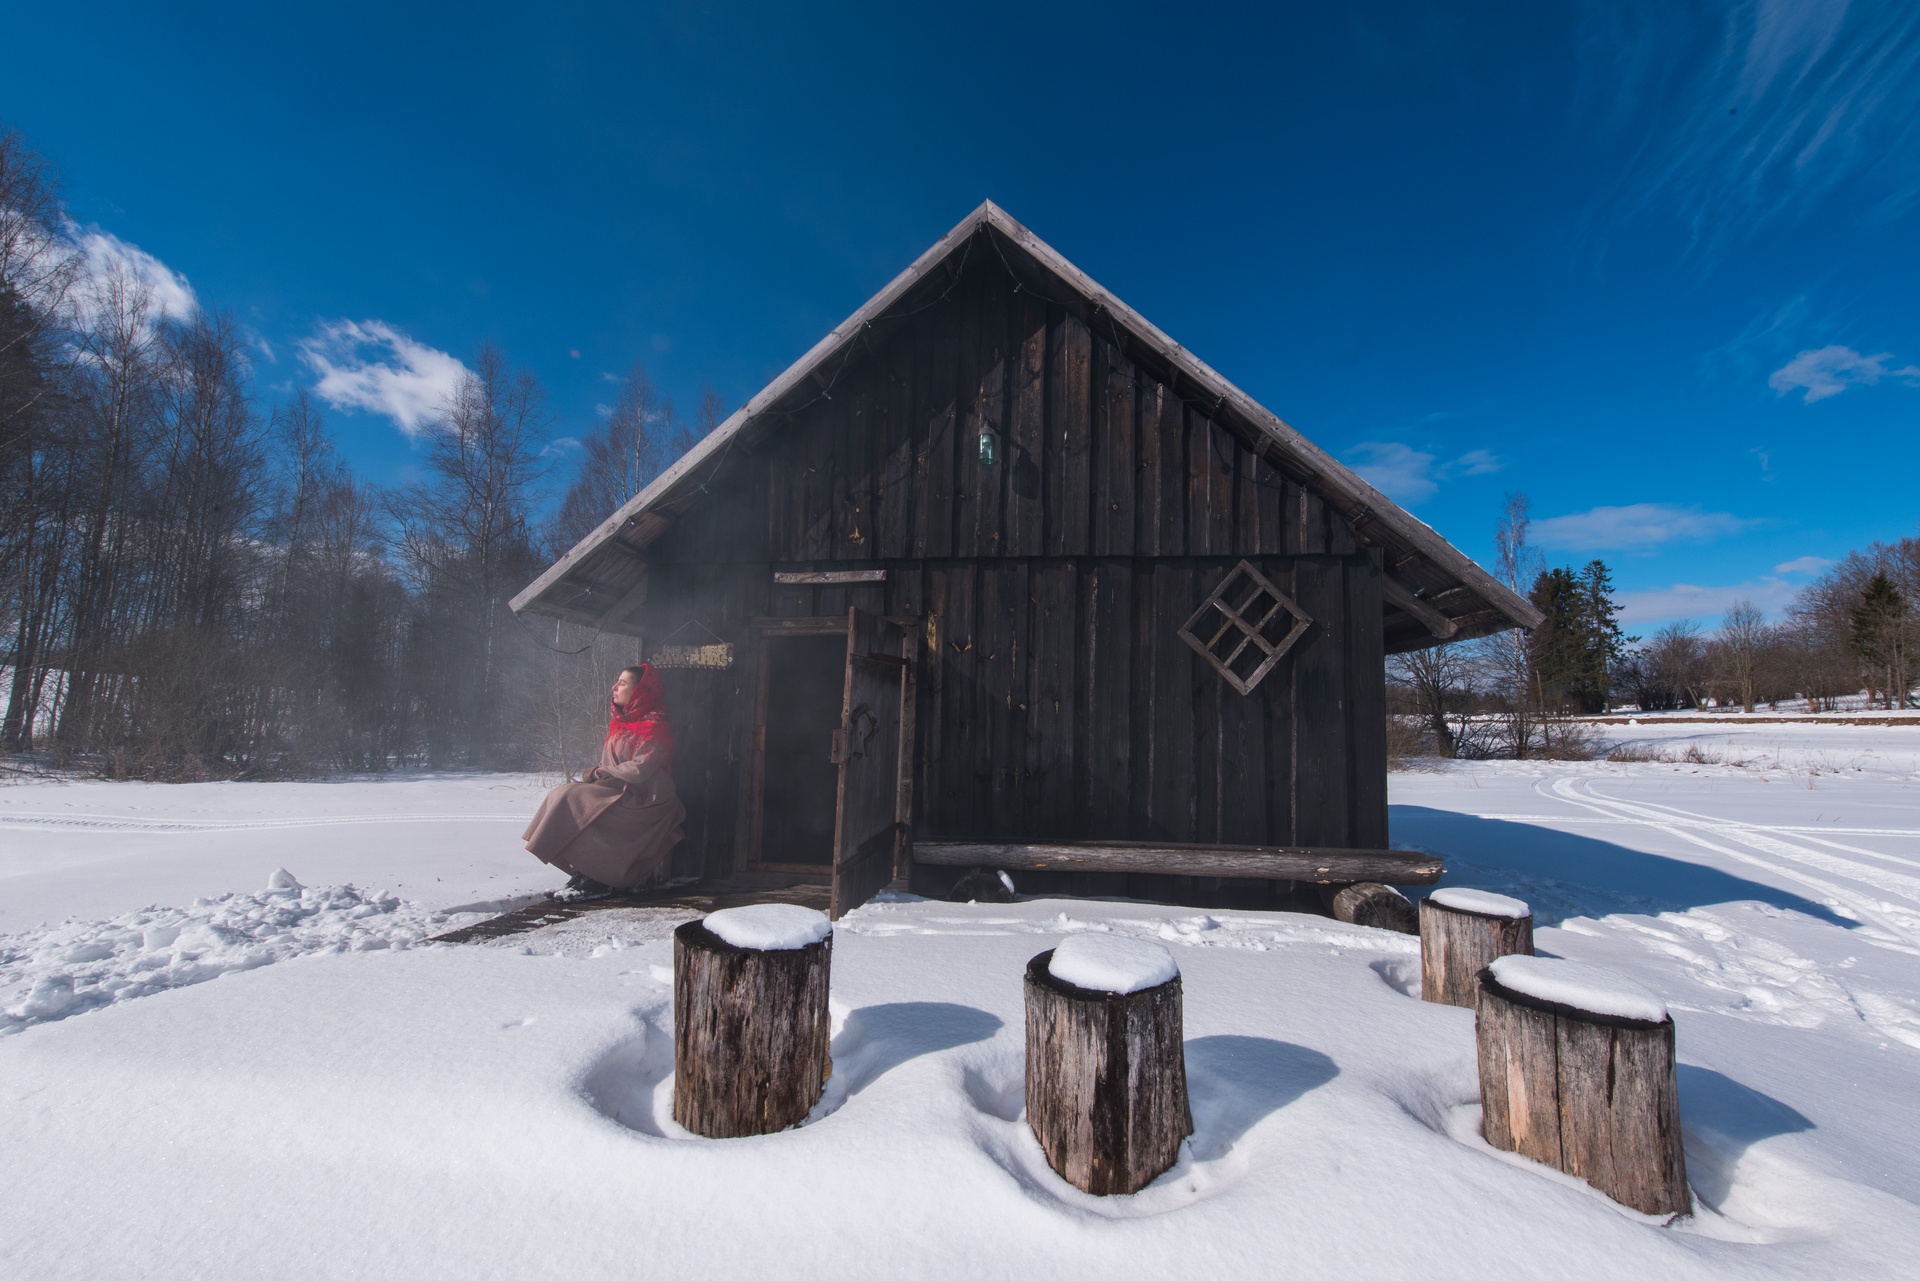 Erinevad saunatüübid Eestis – kas oled neid proovinud?